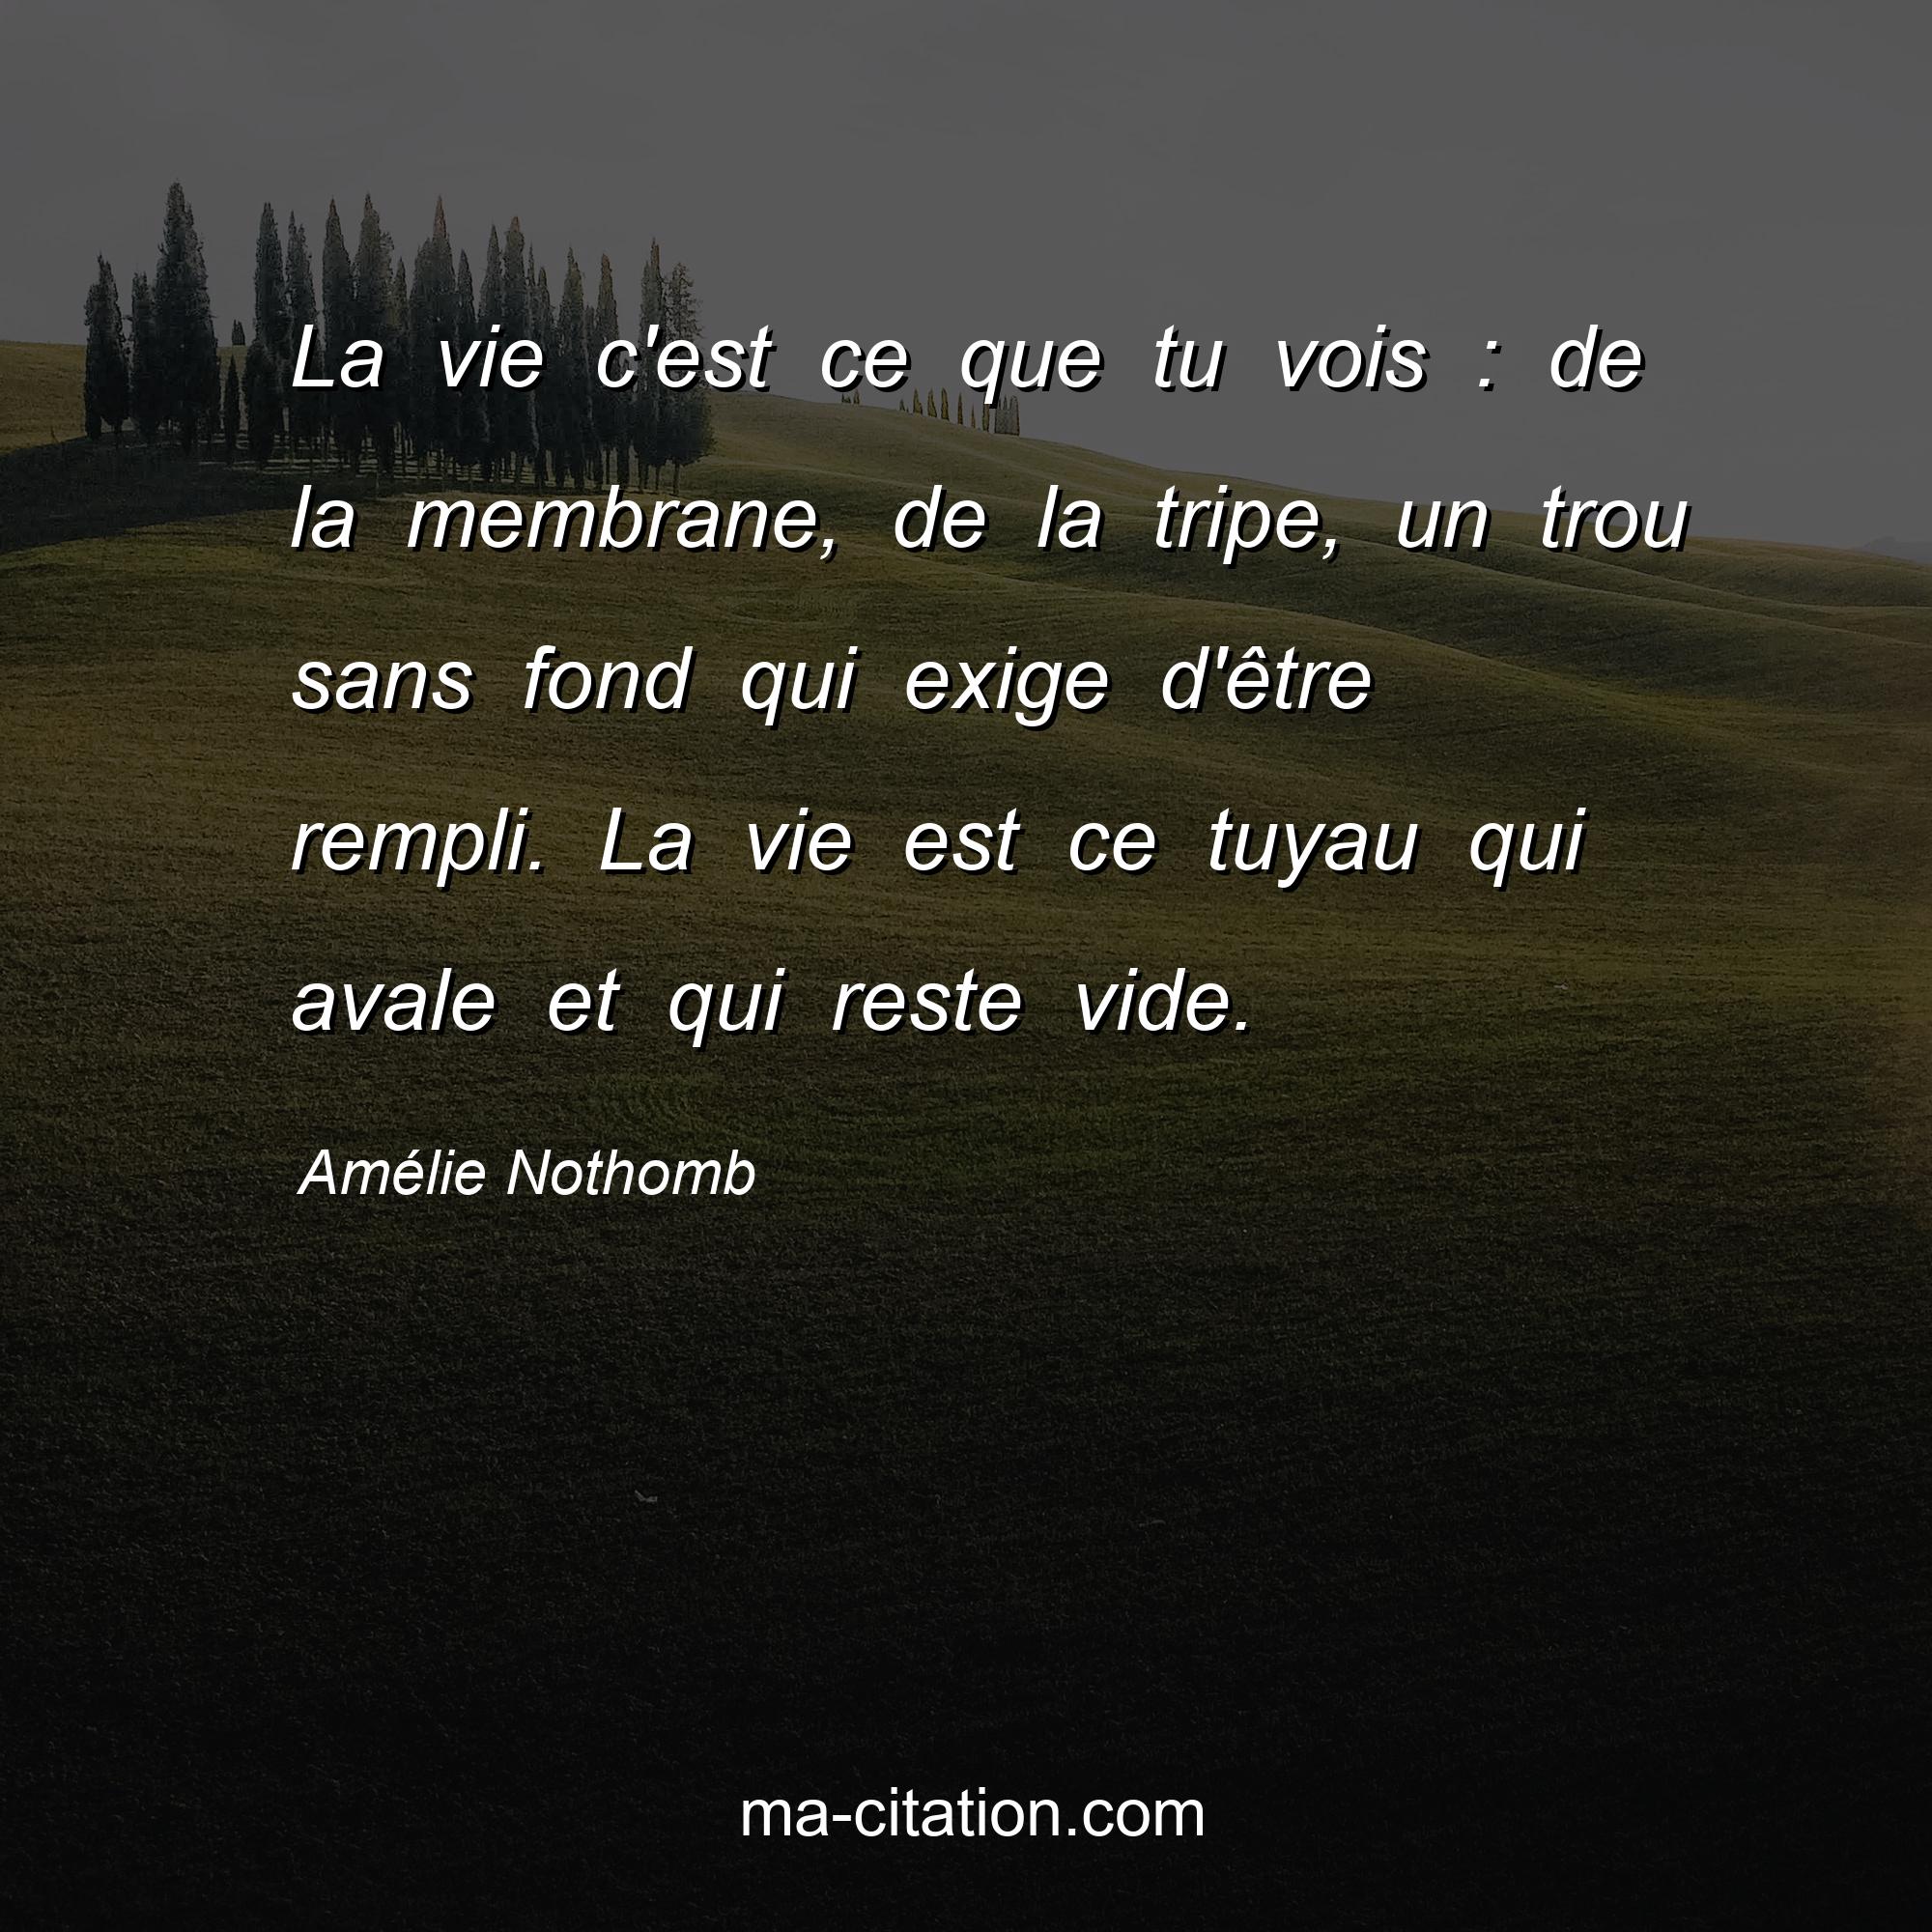 Amélie Nothomb : La vie c'est ce que tu vois : de la membrane, de la tripe, un trou sans fond qui exige d'être rempli. La vie est ce tuyau qui avale et qui reste vide.